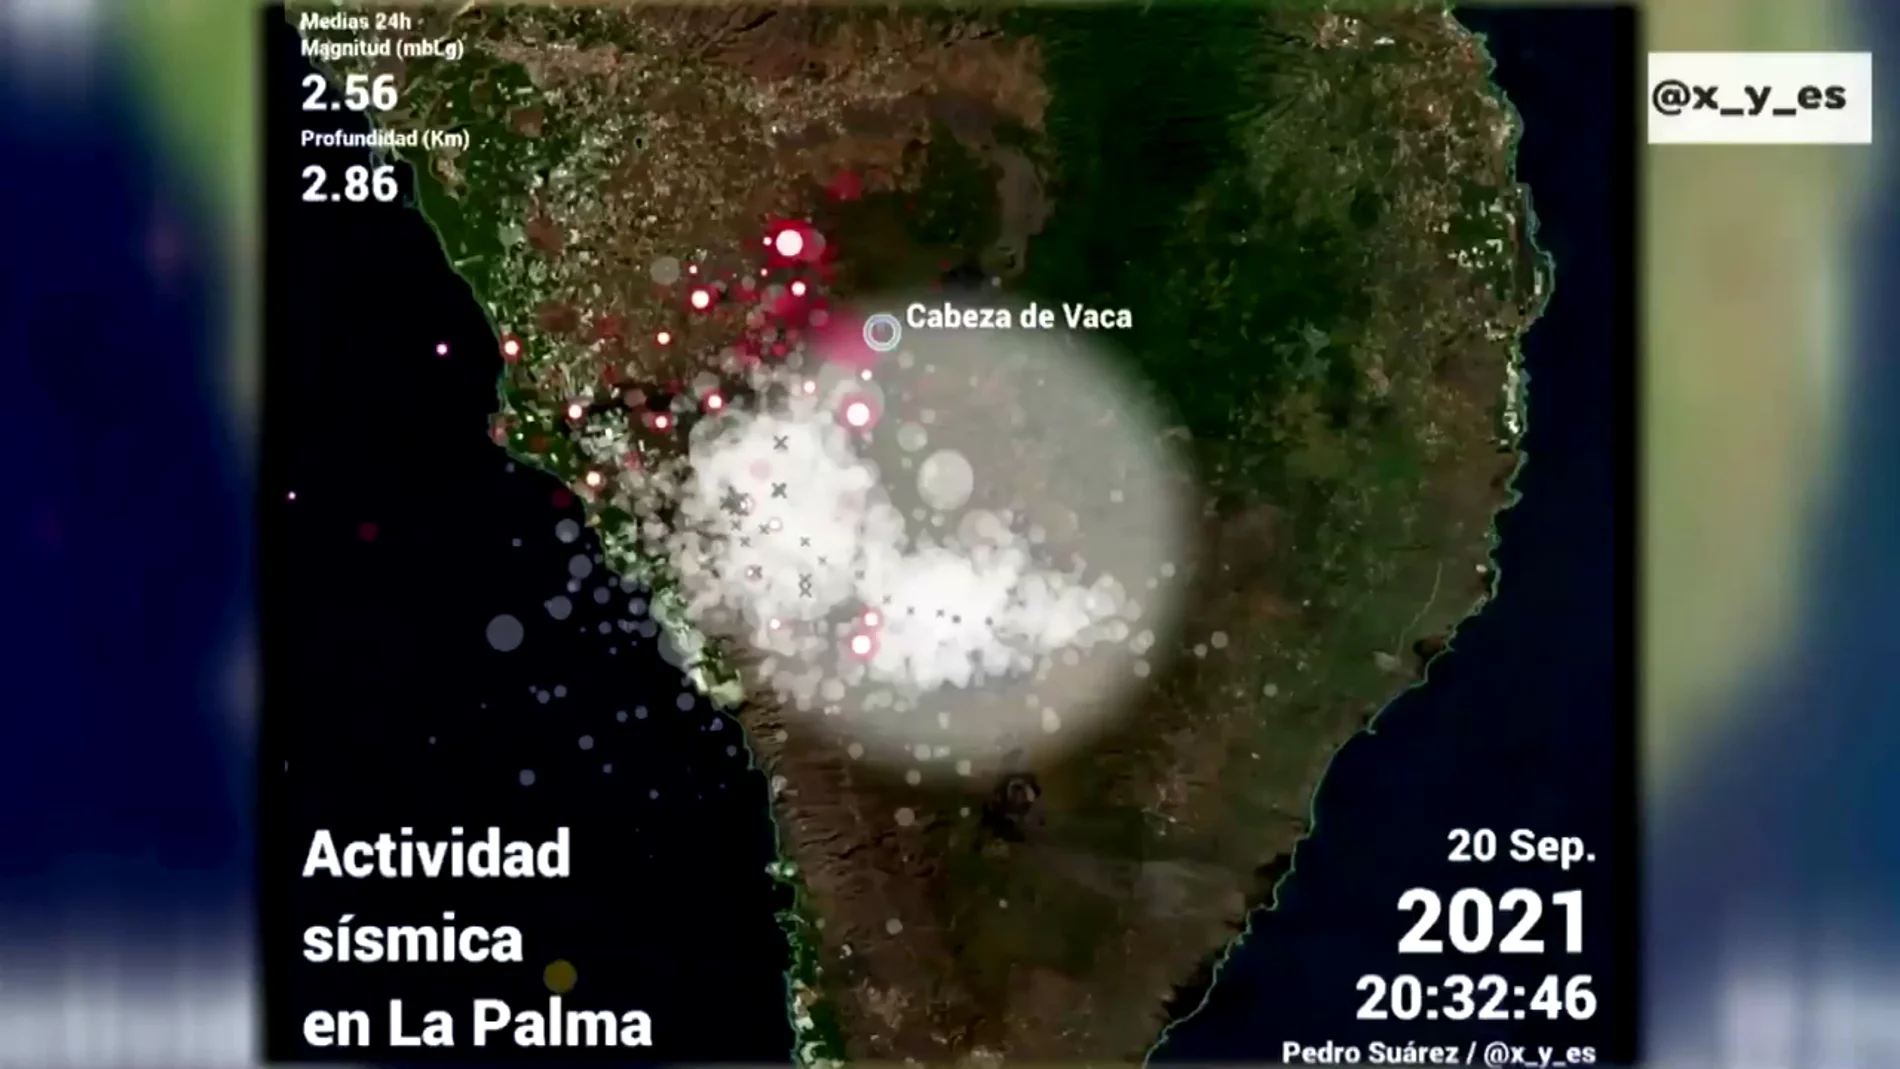 La imagen que muestra cómo evoluciona la actividad sísmica y la erupción del volcán de La Palma